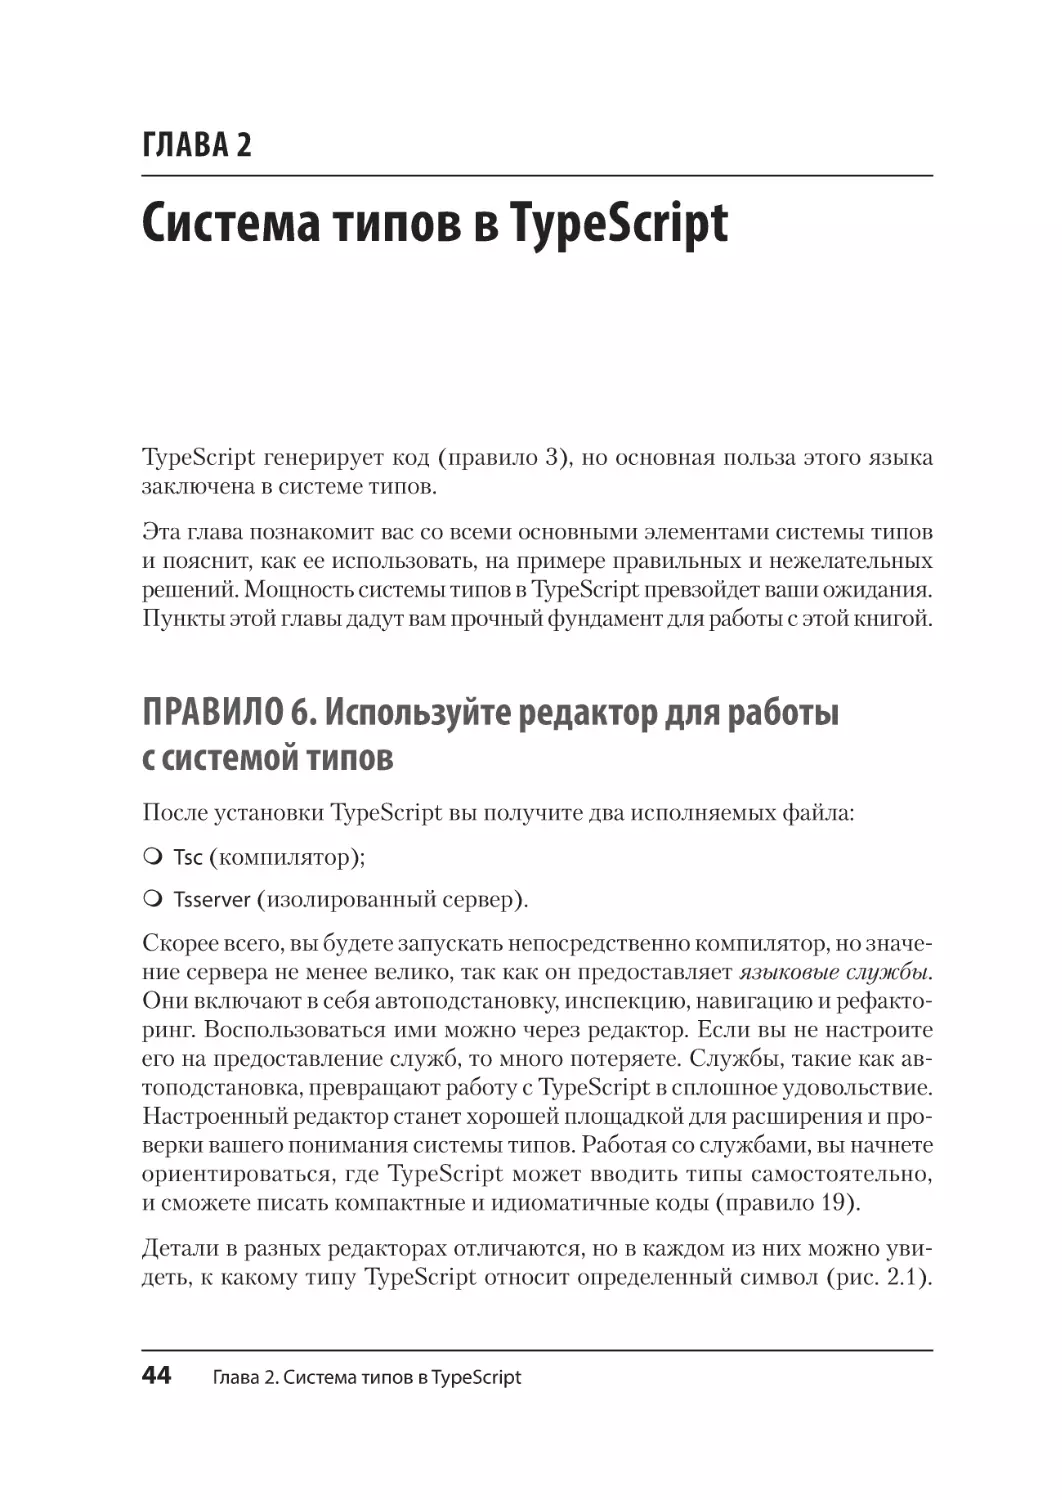 Глава 2. Система типов в TypeScript
Правило 6. Используйте редактор для работы с системой типов